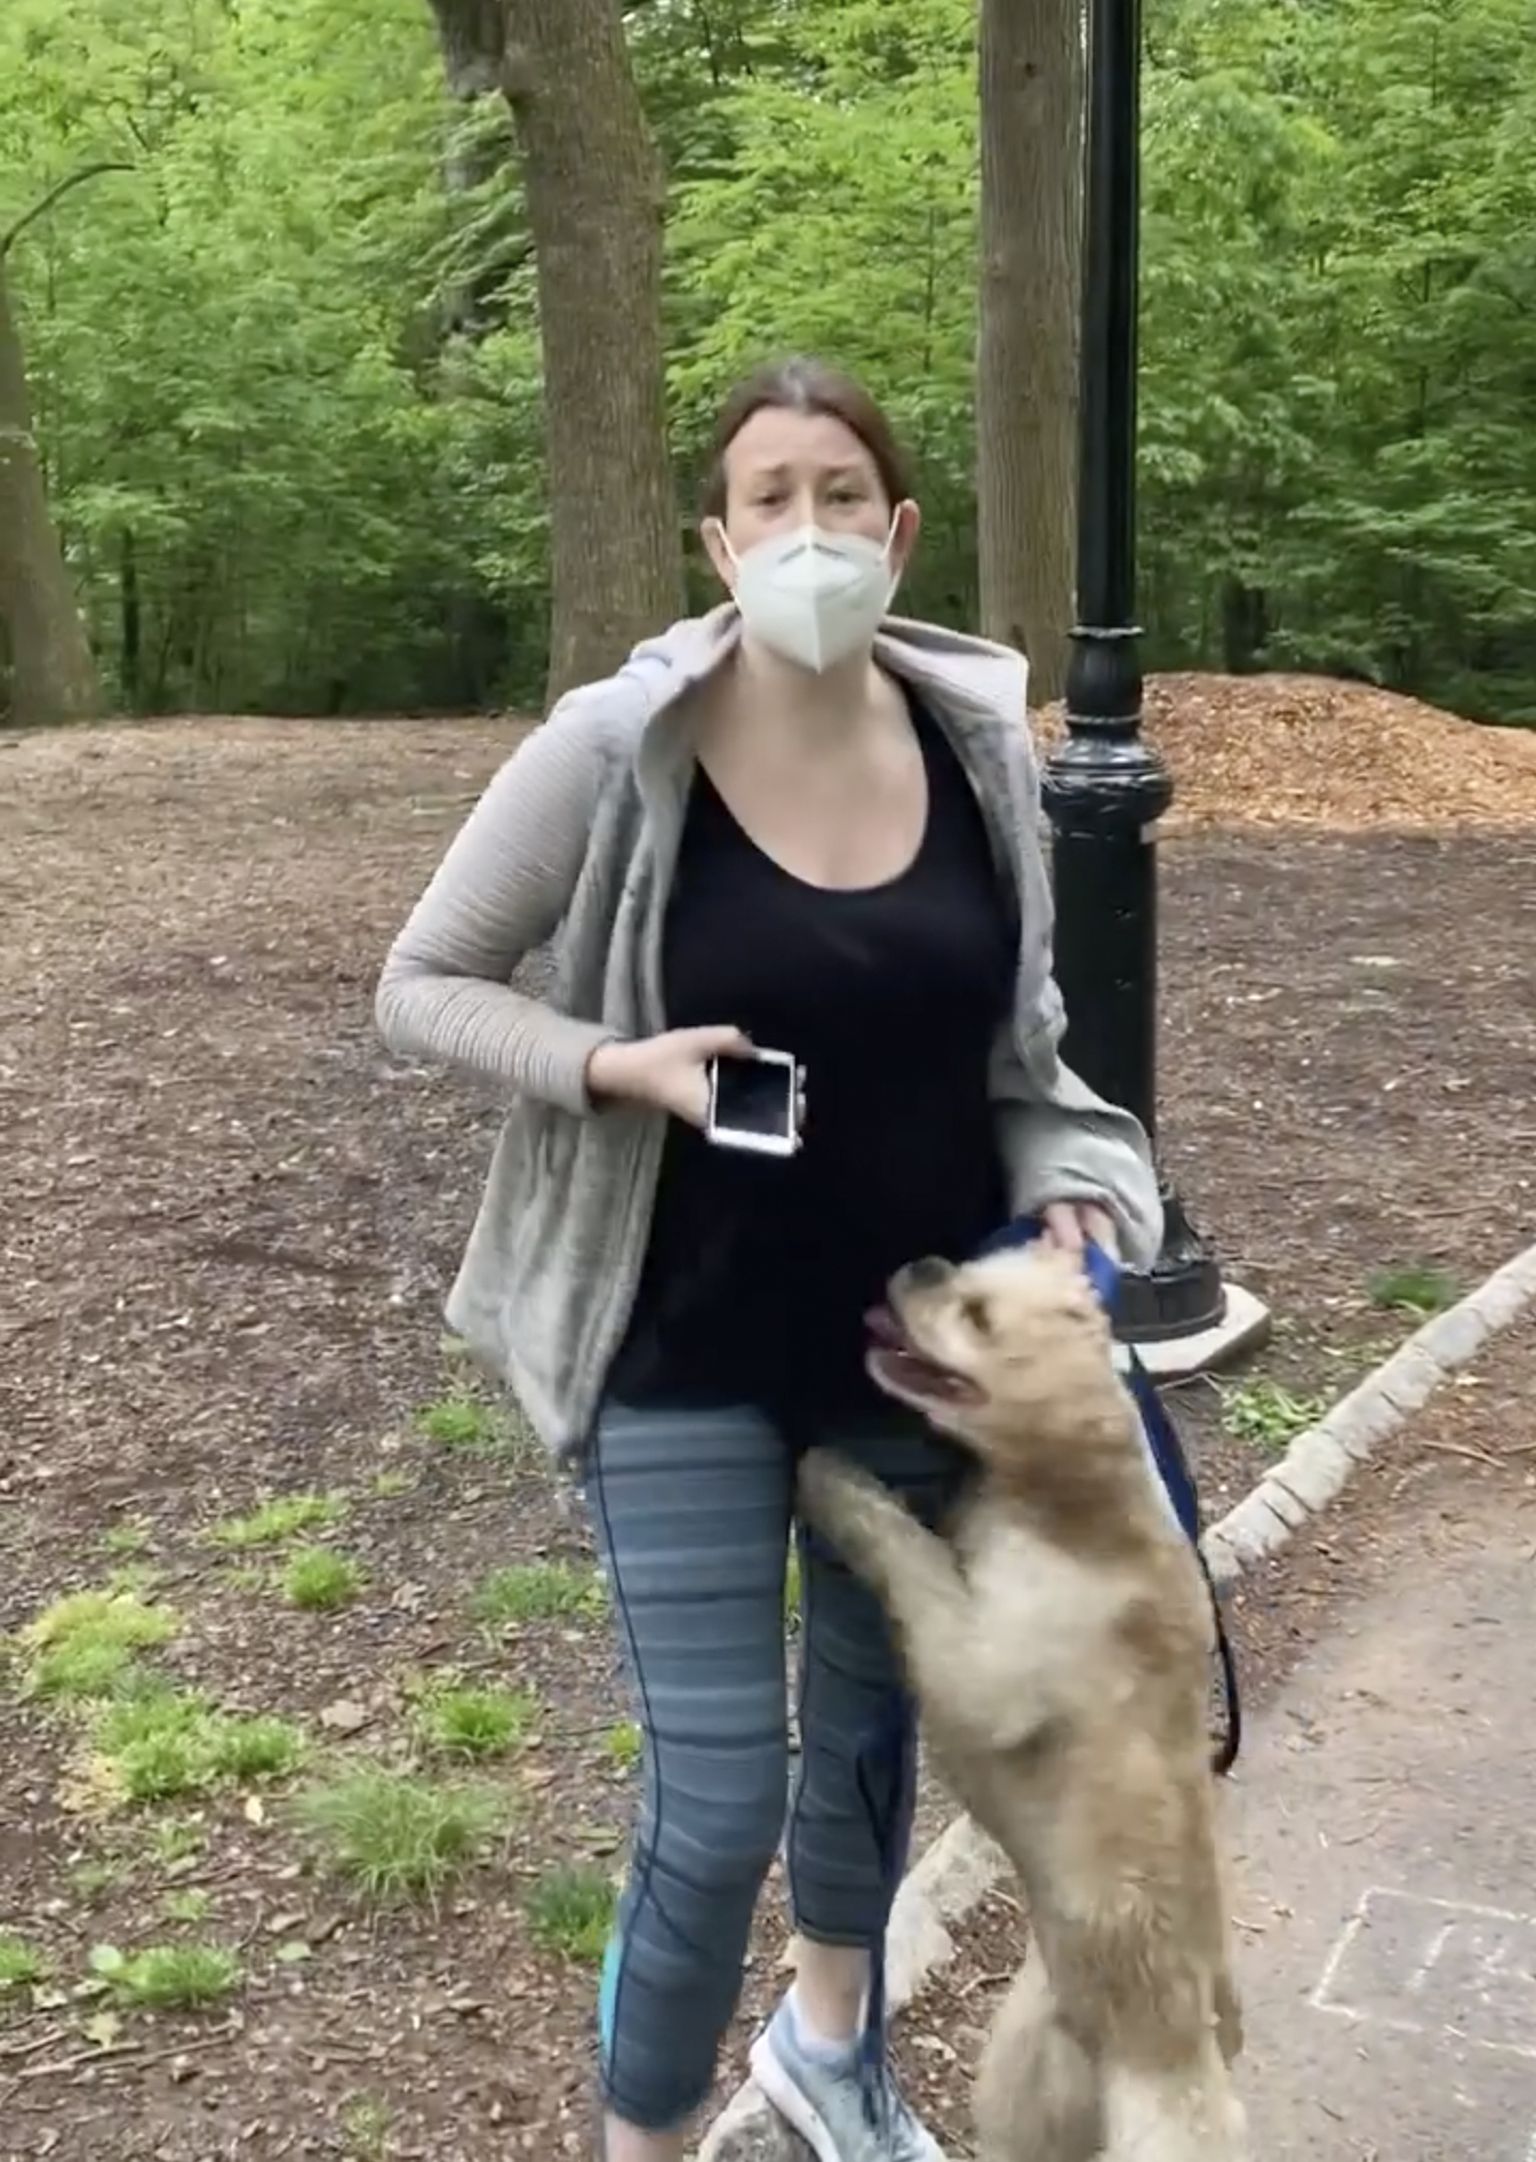 Kaader videost, millel on näha Amy Cooperit oma koeraga New Yorgi keskpargis